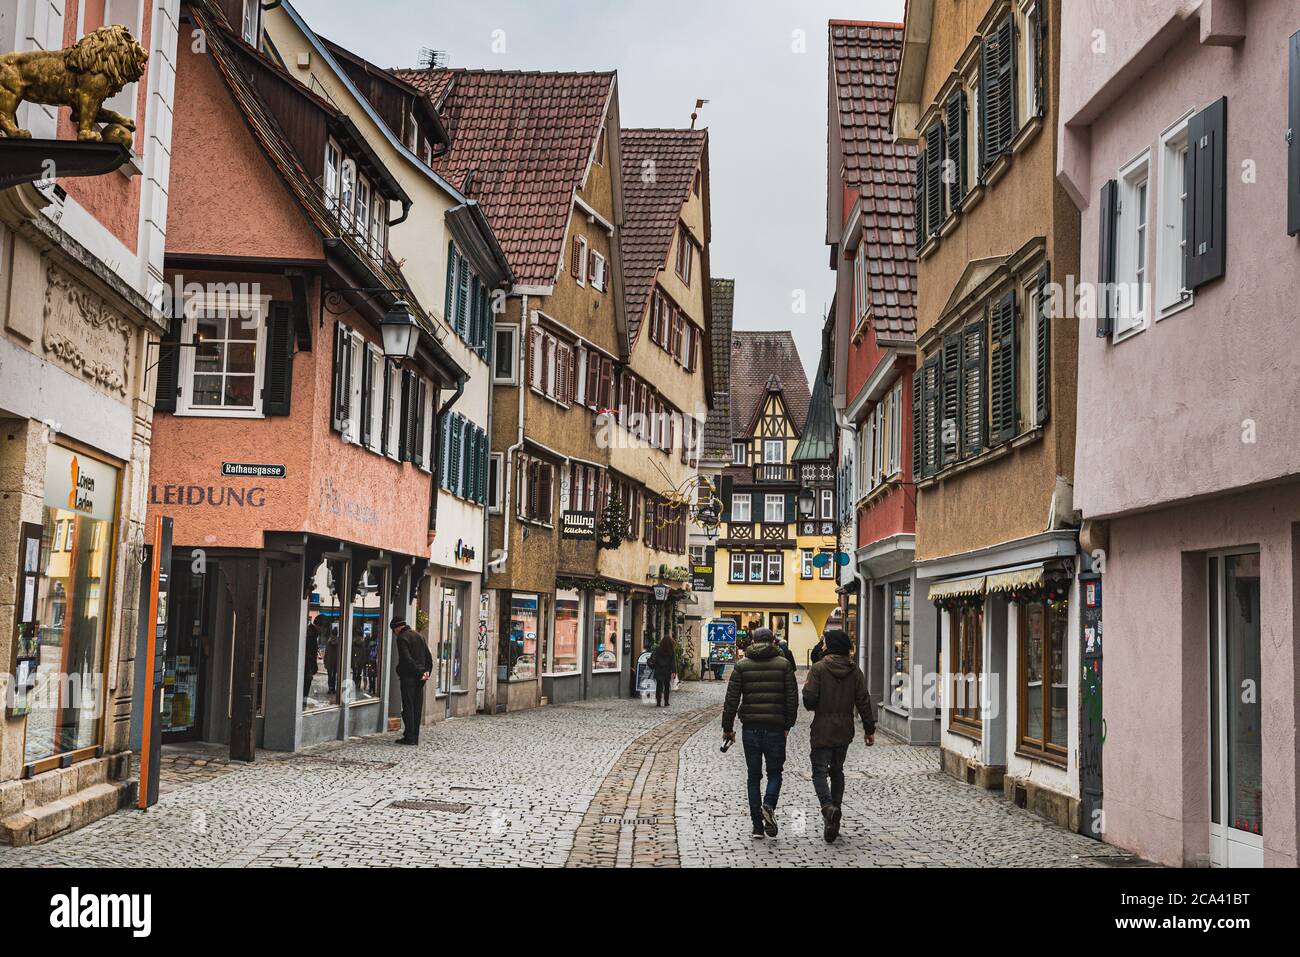 Des bâtiments allemands traditionnels à colombages près d'un quartier médiéval calme et pavé Allée ou rue avec des magasins et peu de personnes à Tubingen Vieille ville - Allemagne Banque D'Images